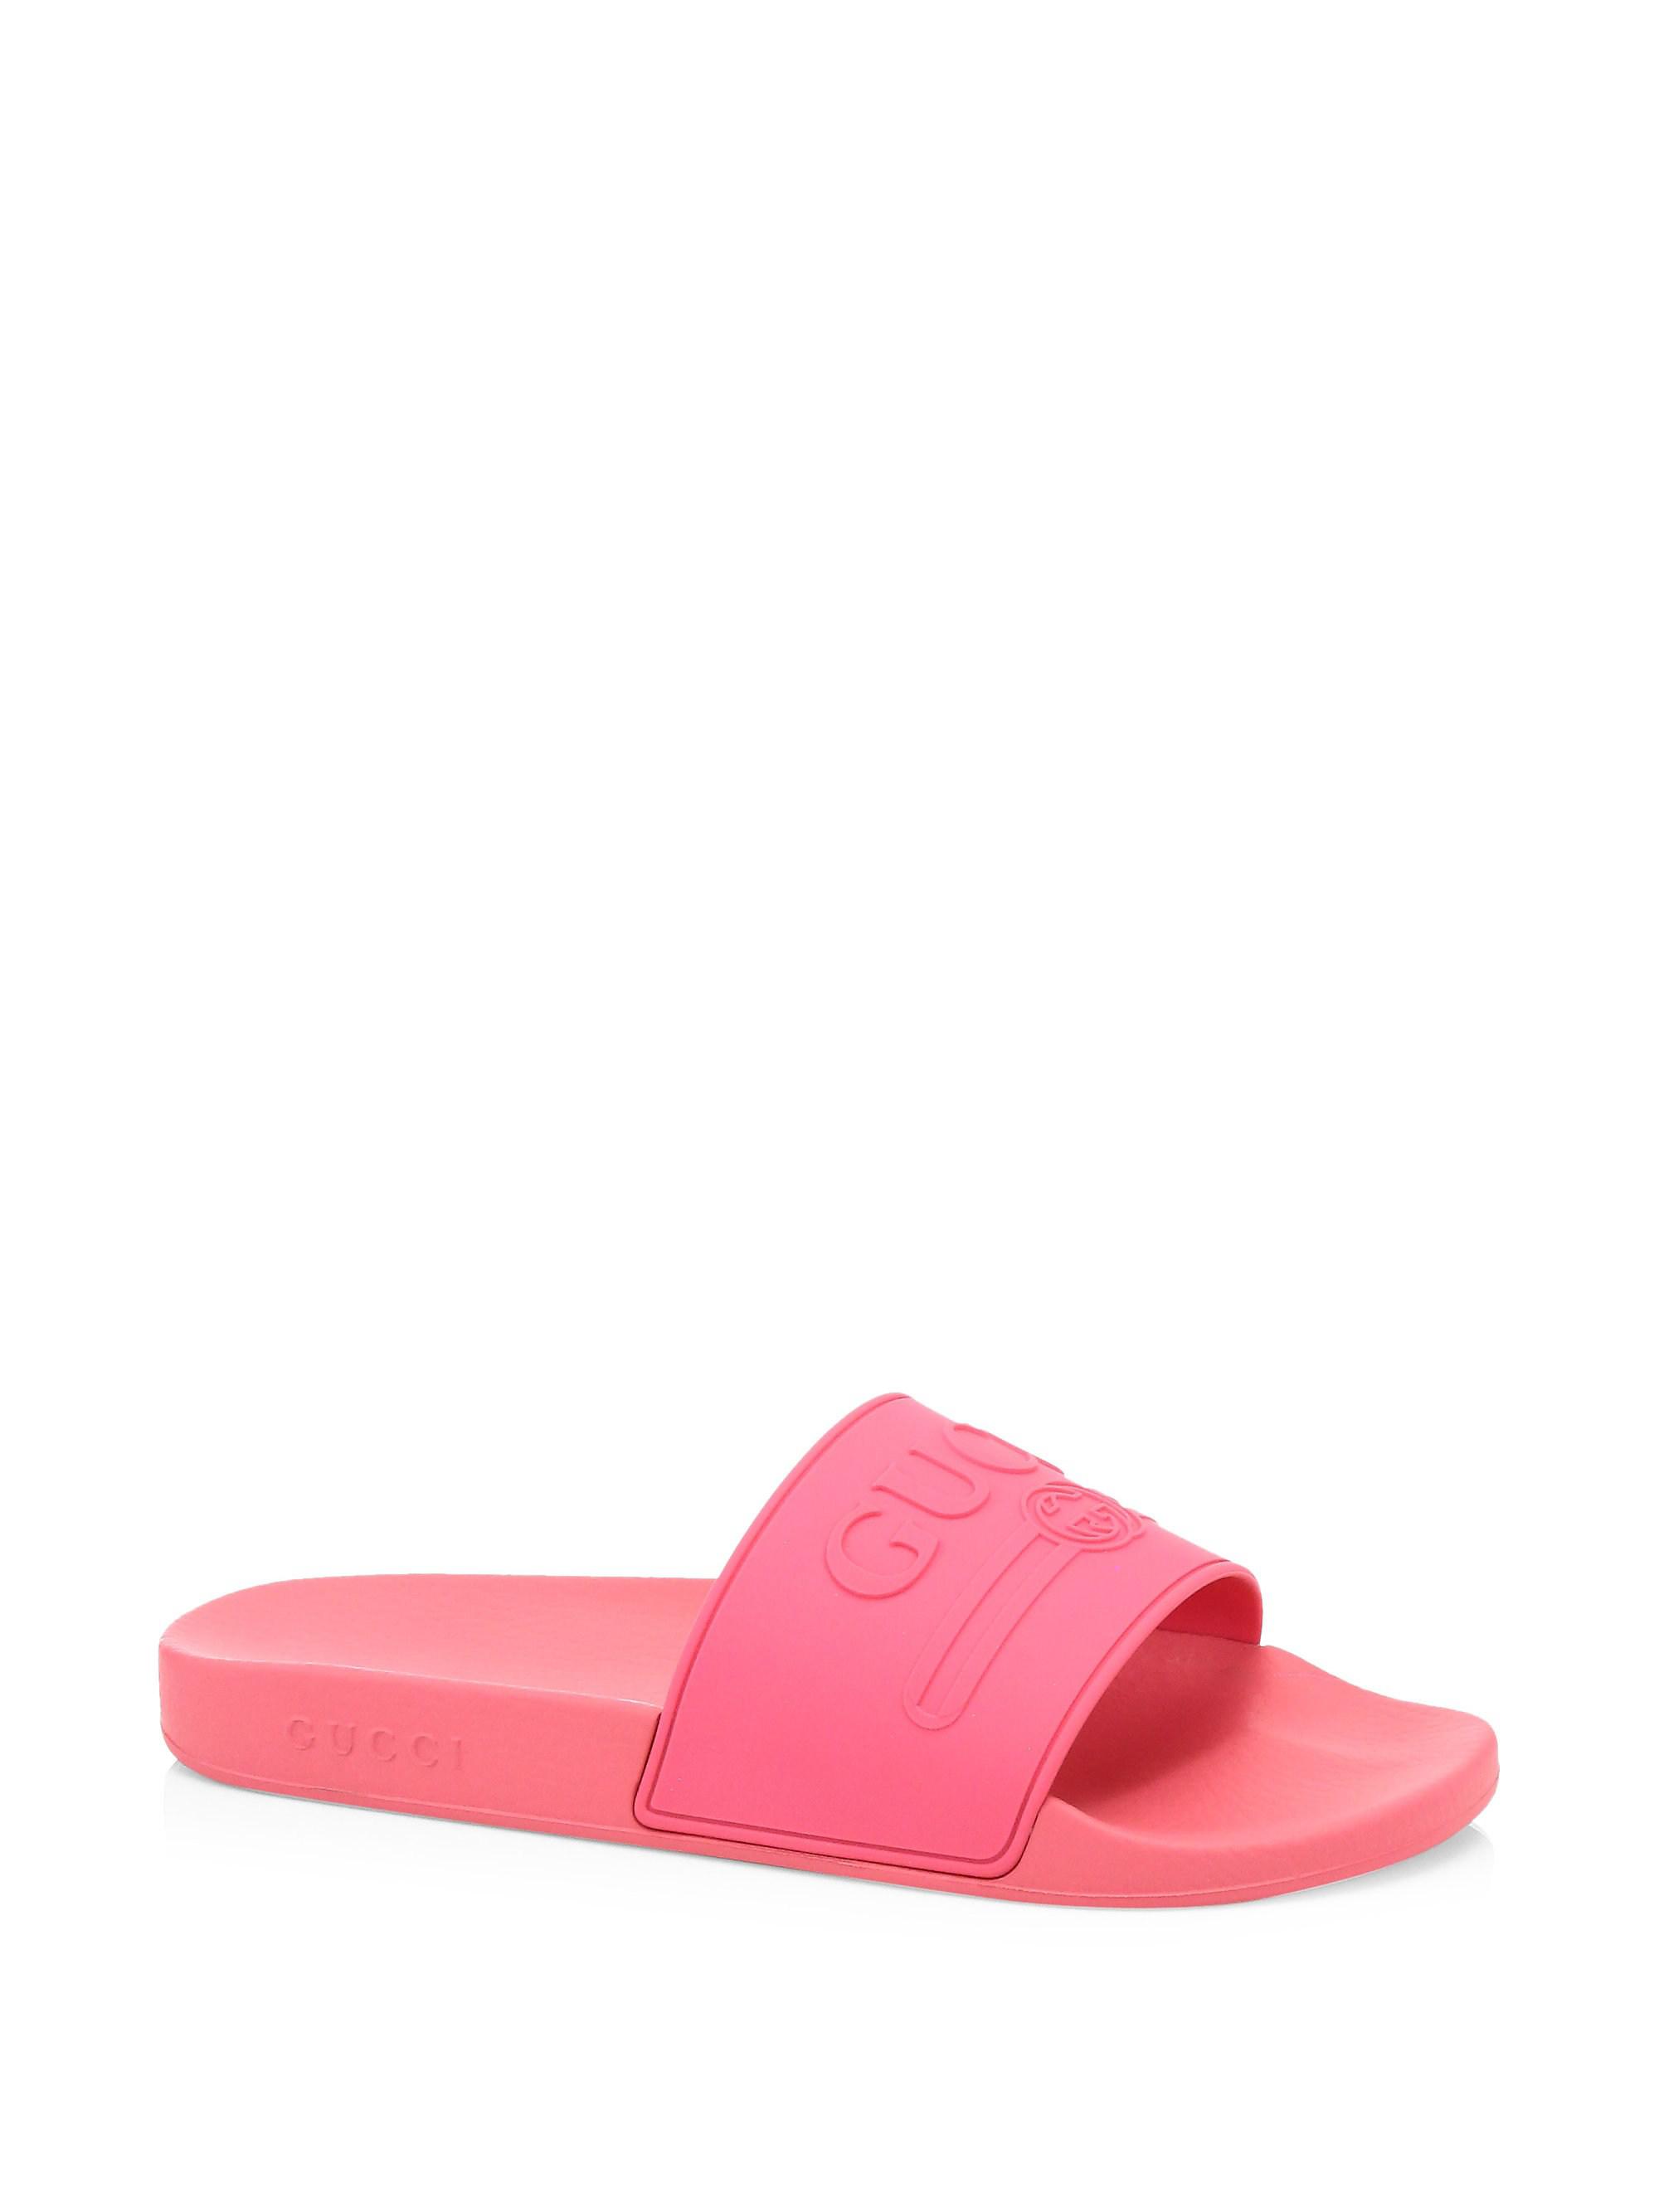 Gucci Pursuit Logo Rubber Slide Sandal in Pink for Men - Lyst